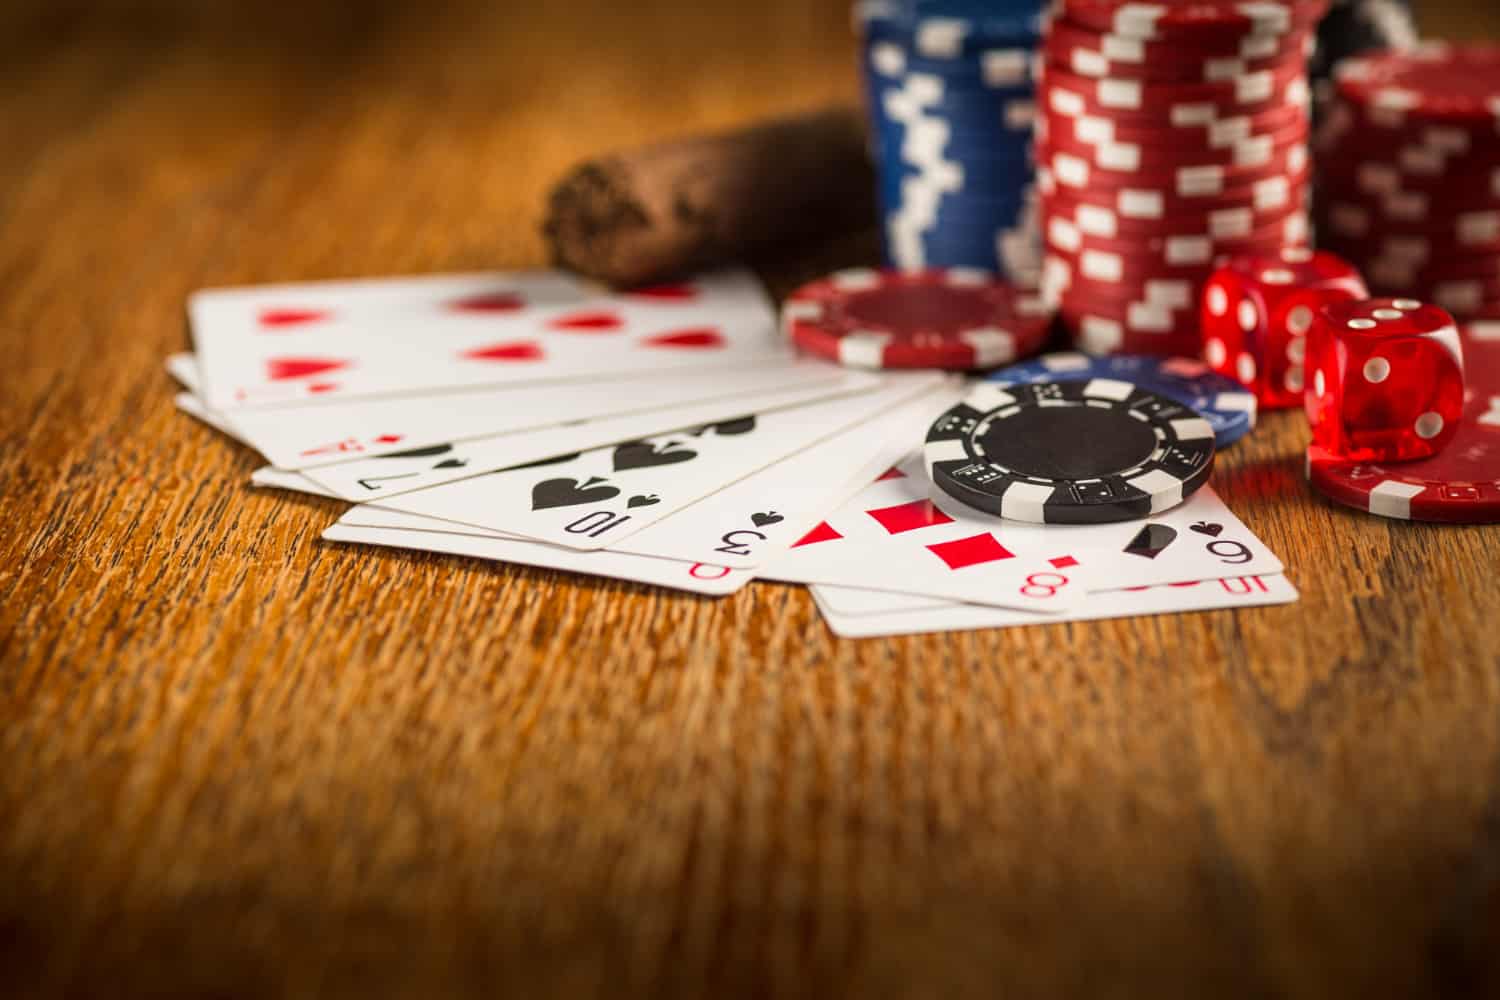 Melhores sites para jogar pôquer online em 2021 | da697f41 cartas2 | married games dicas/guias | cartas, jogo online, multiplayer, pc, pôquer | jogar pôquer online